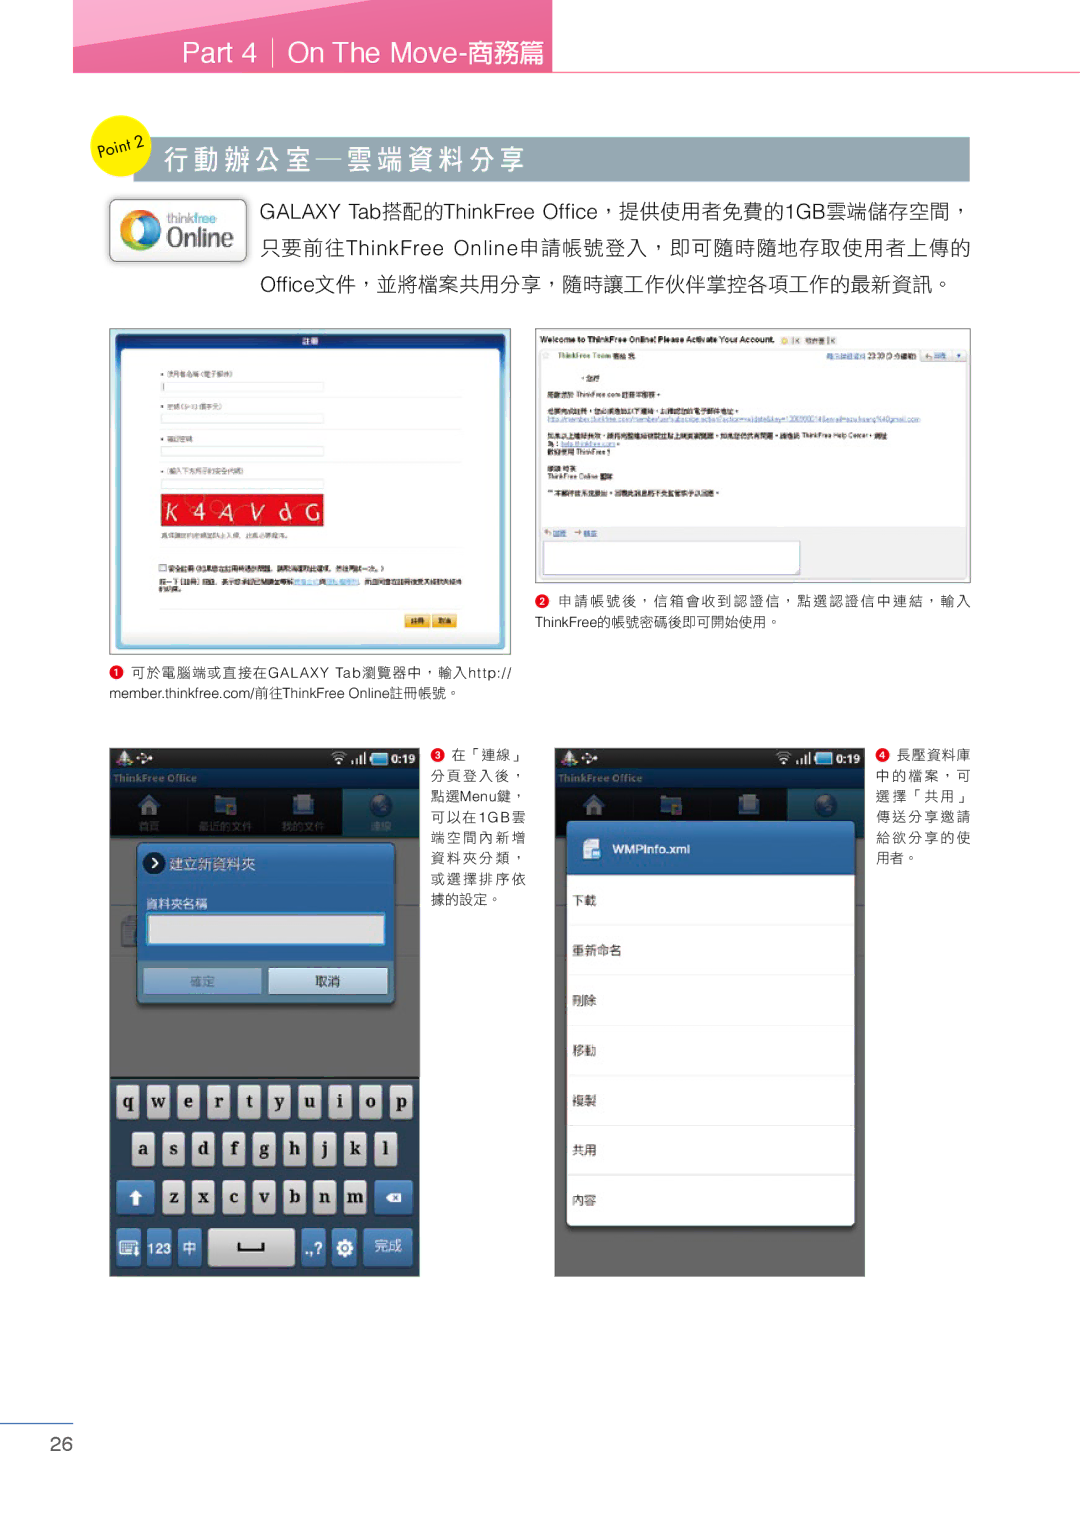 Samsung Tablet manual 行動辦公室雲端資料分享 